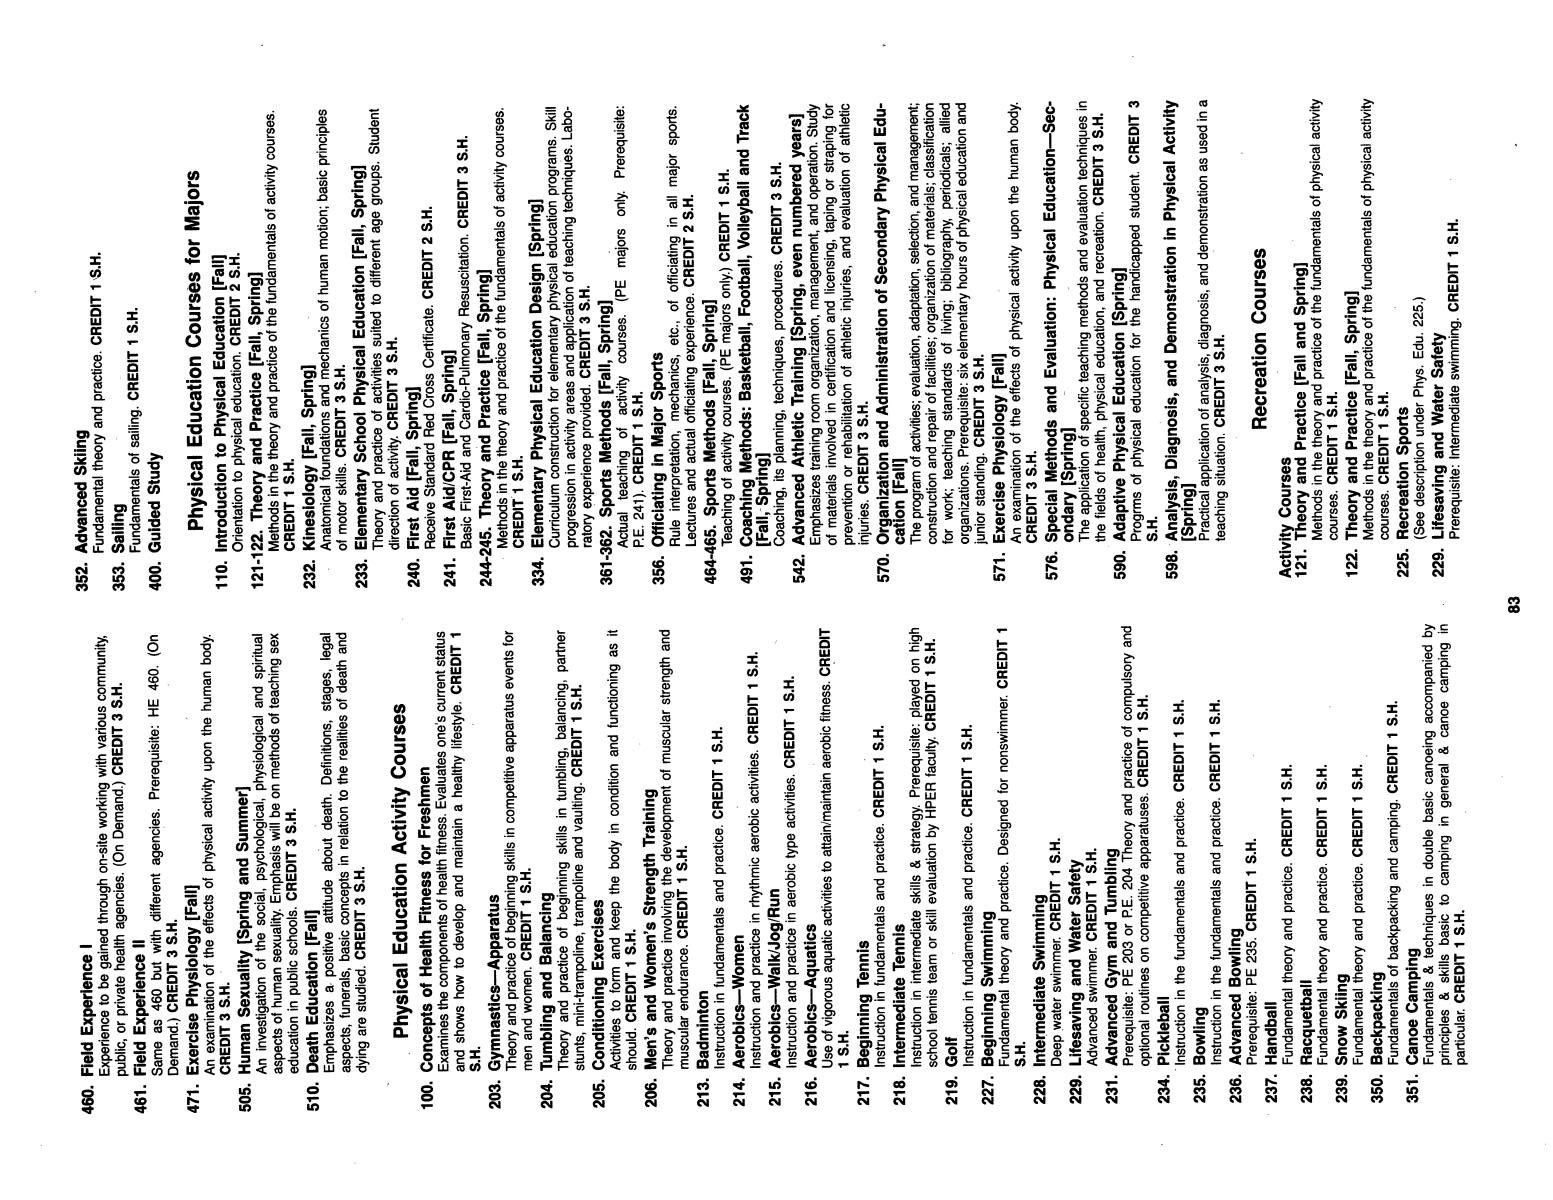 Catalog of Abilene Christian University, 1985-1986
                                                
                                                    83
                                                